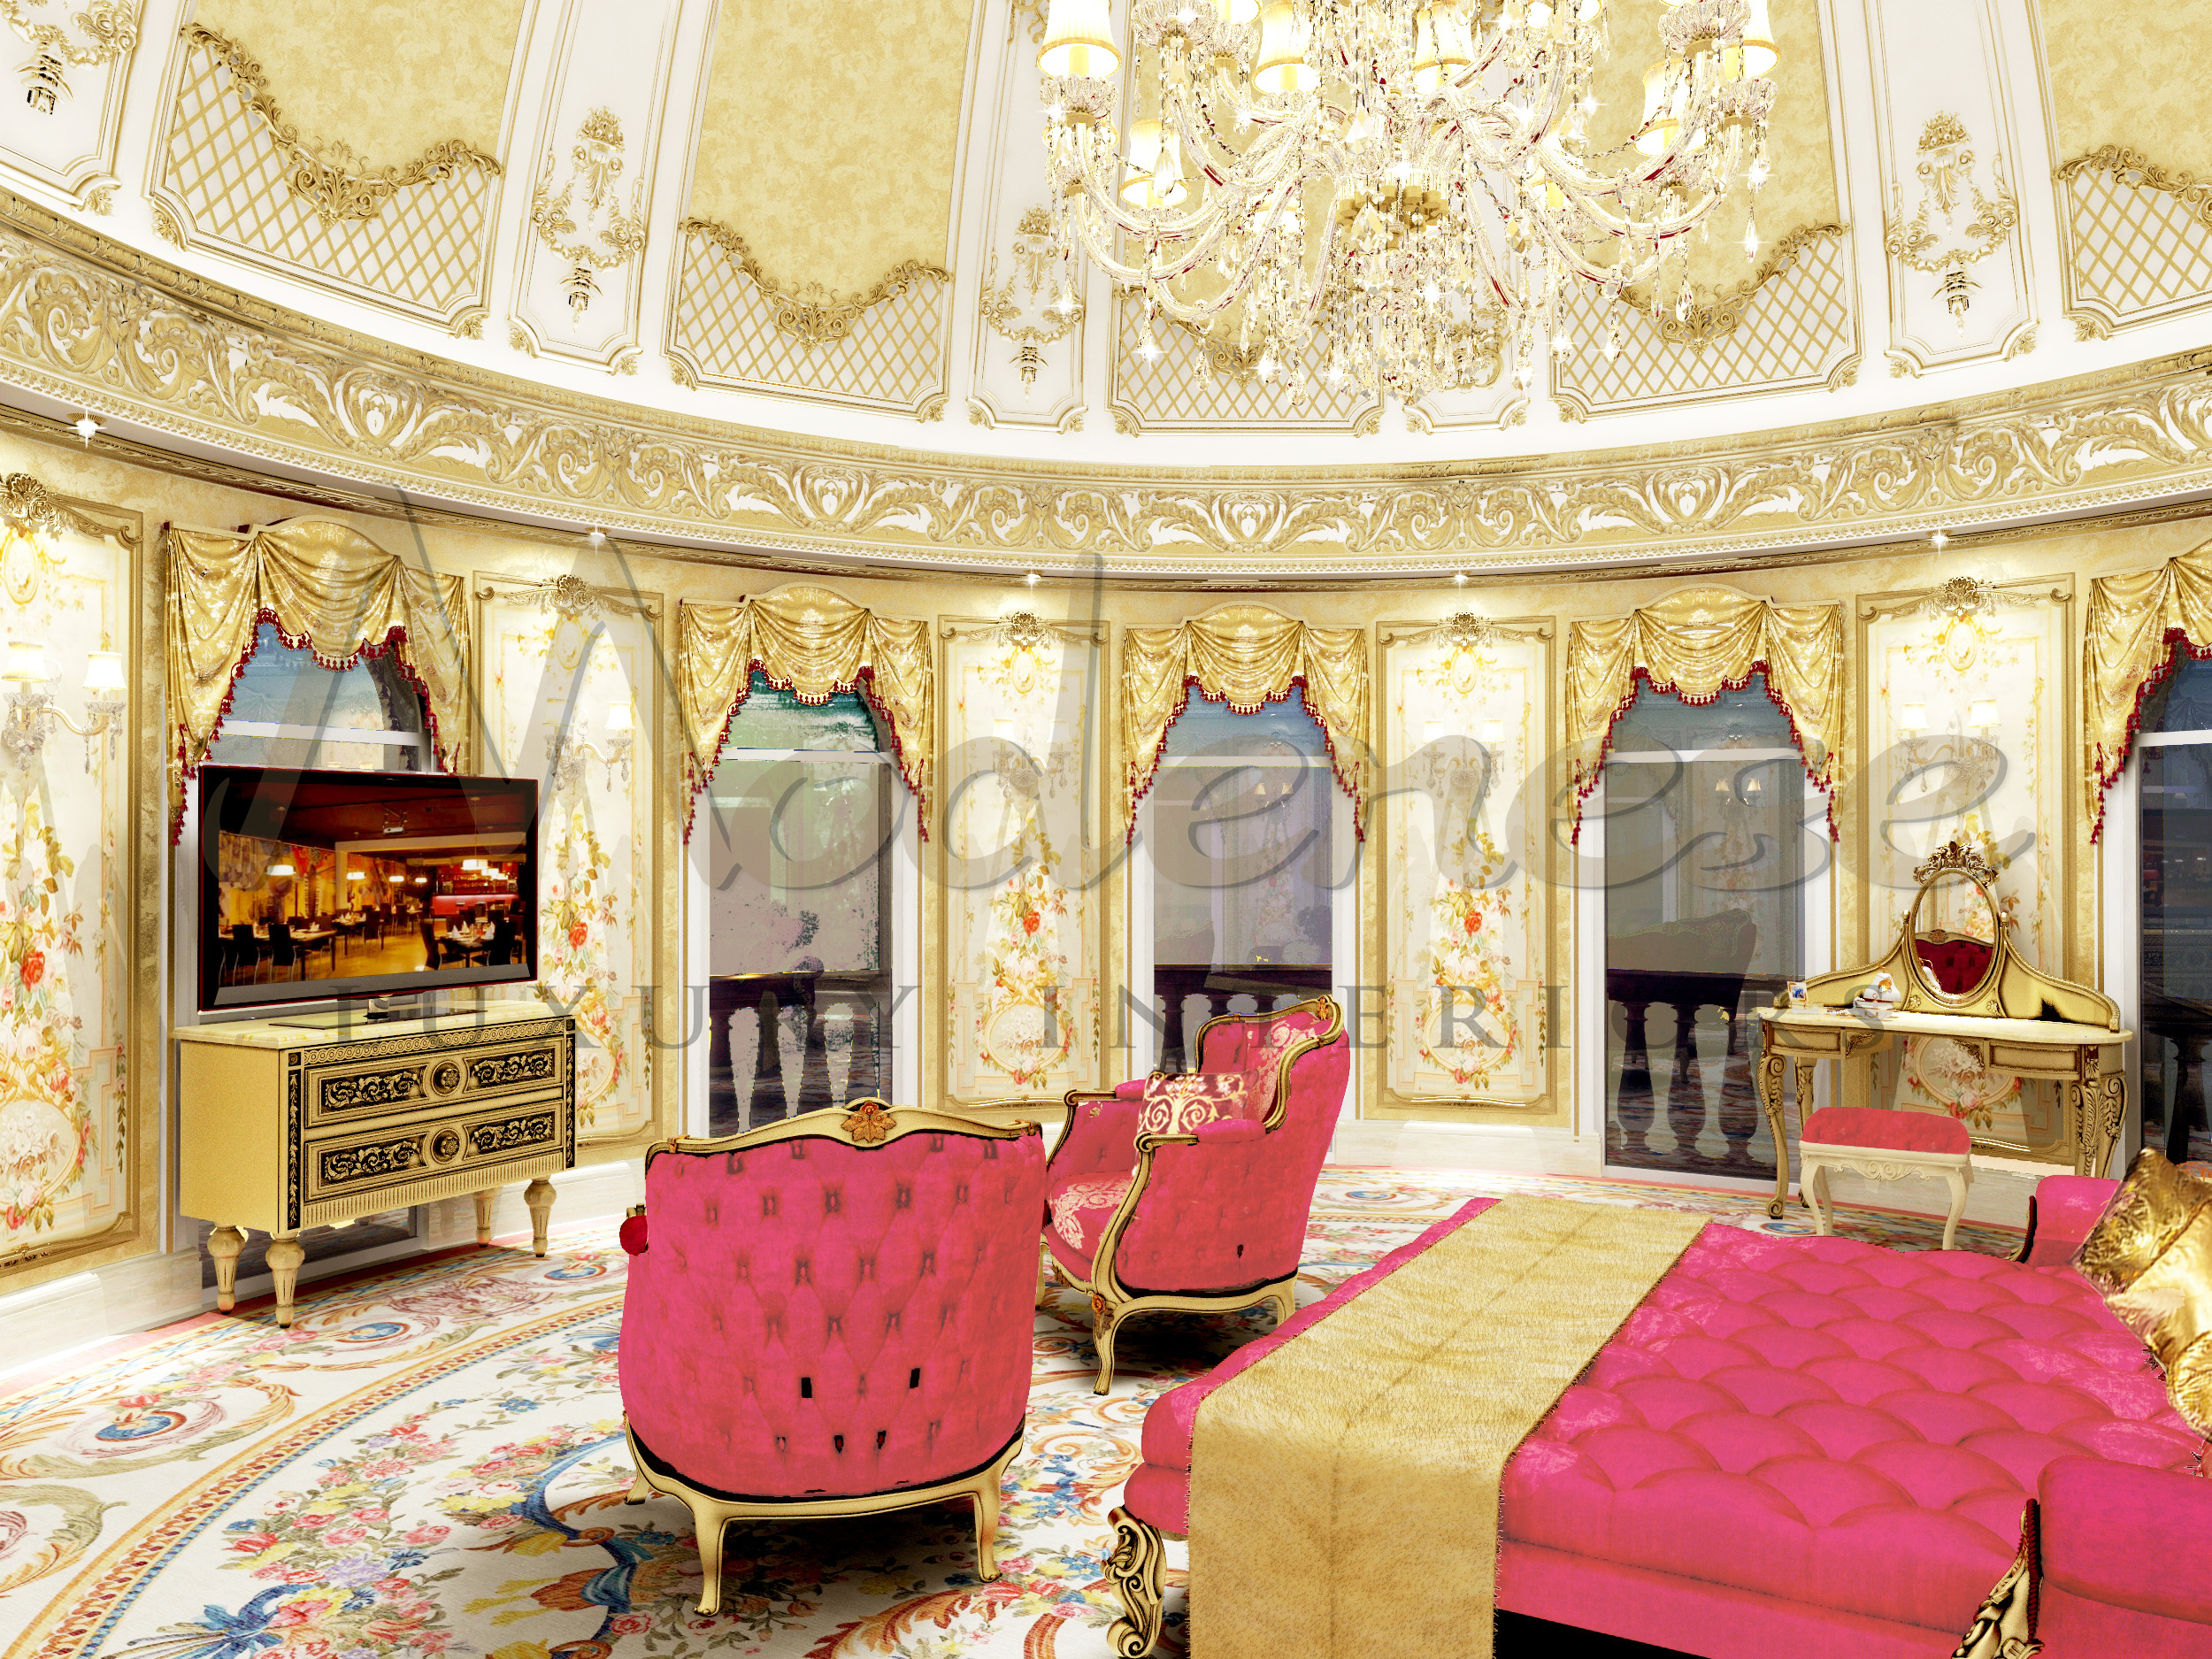 Exquisite Classical Furniture for exclusive bedroom design. High-end classical furniture design. Top interior design company in Miami. Superb bedroom design idea for spacious mansion.